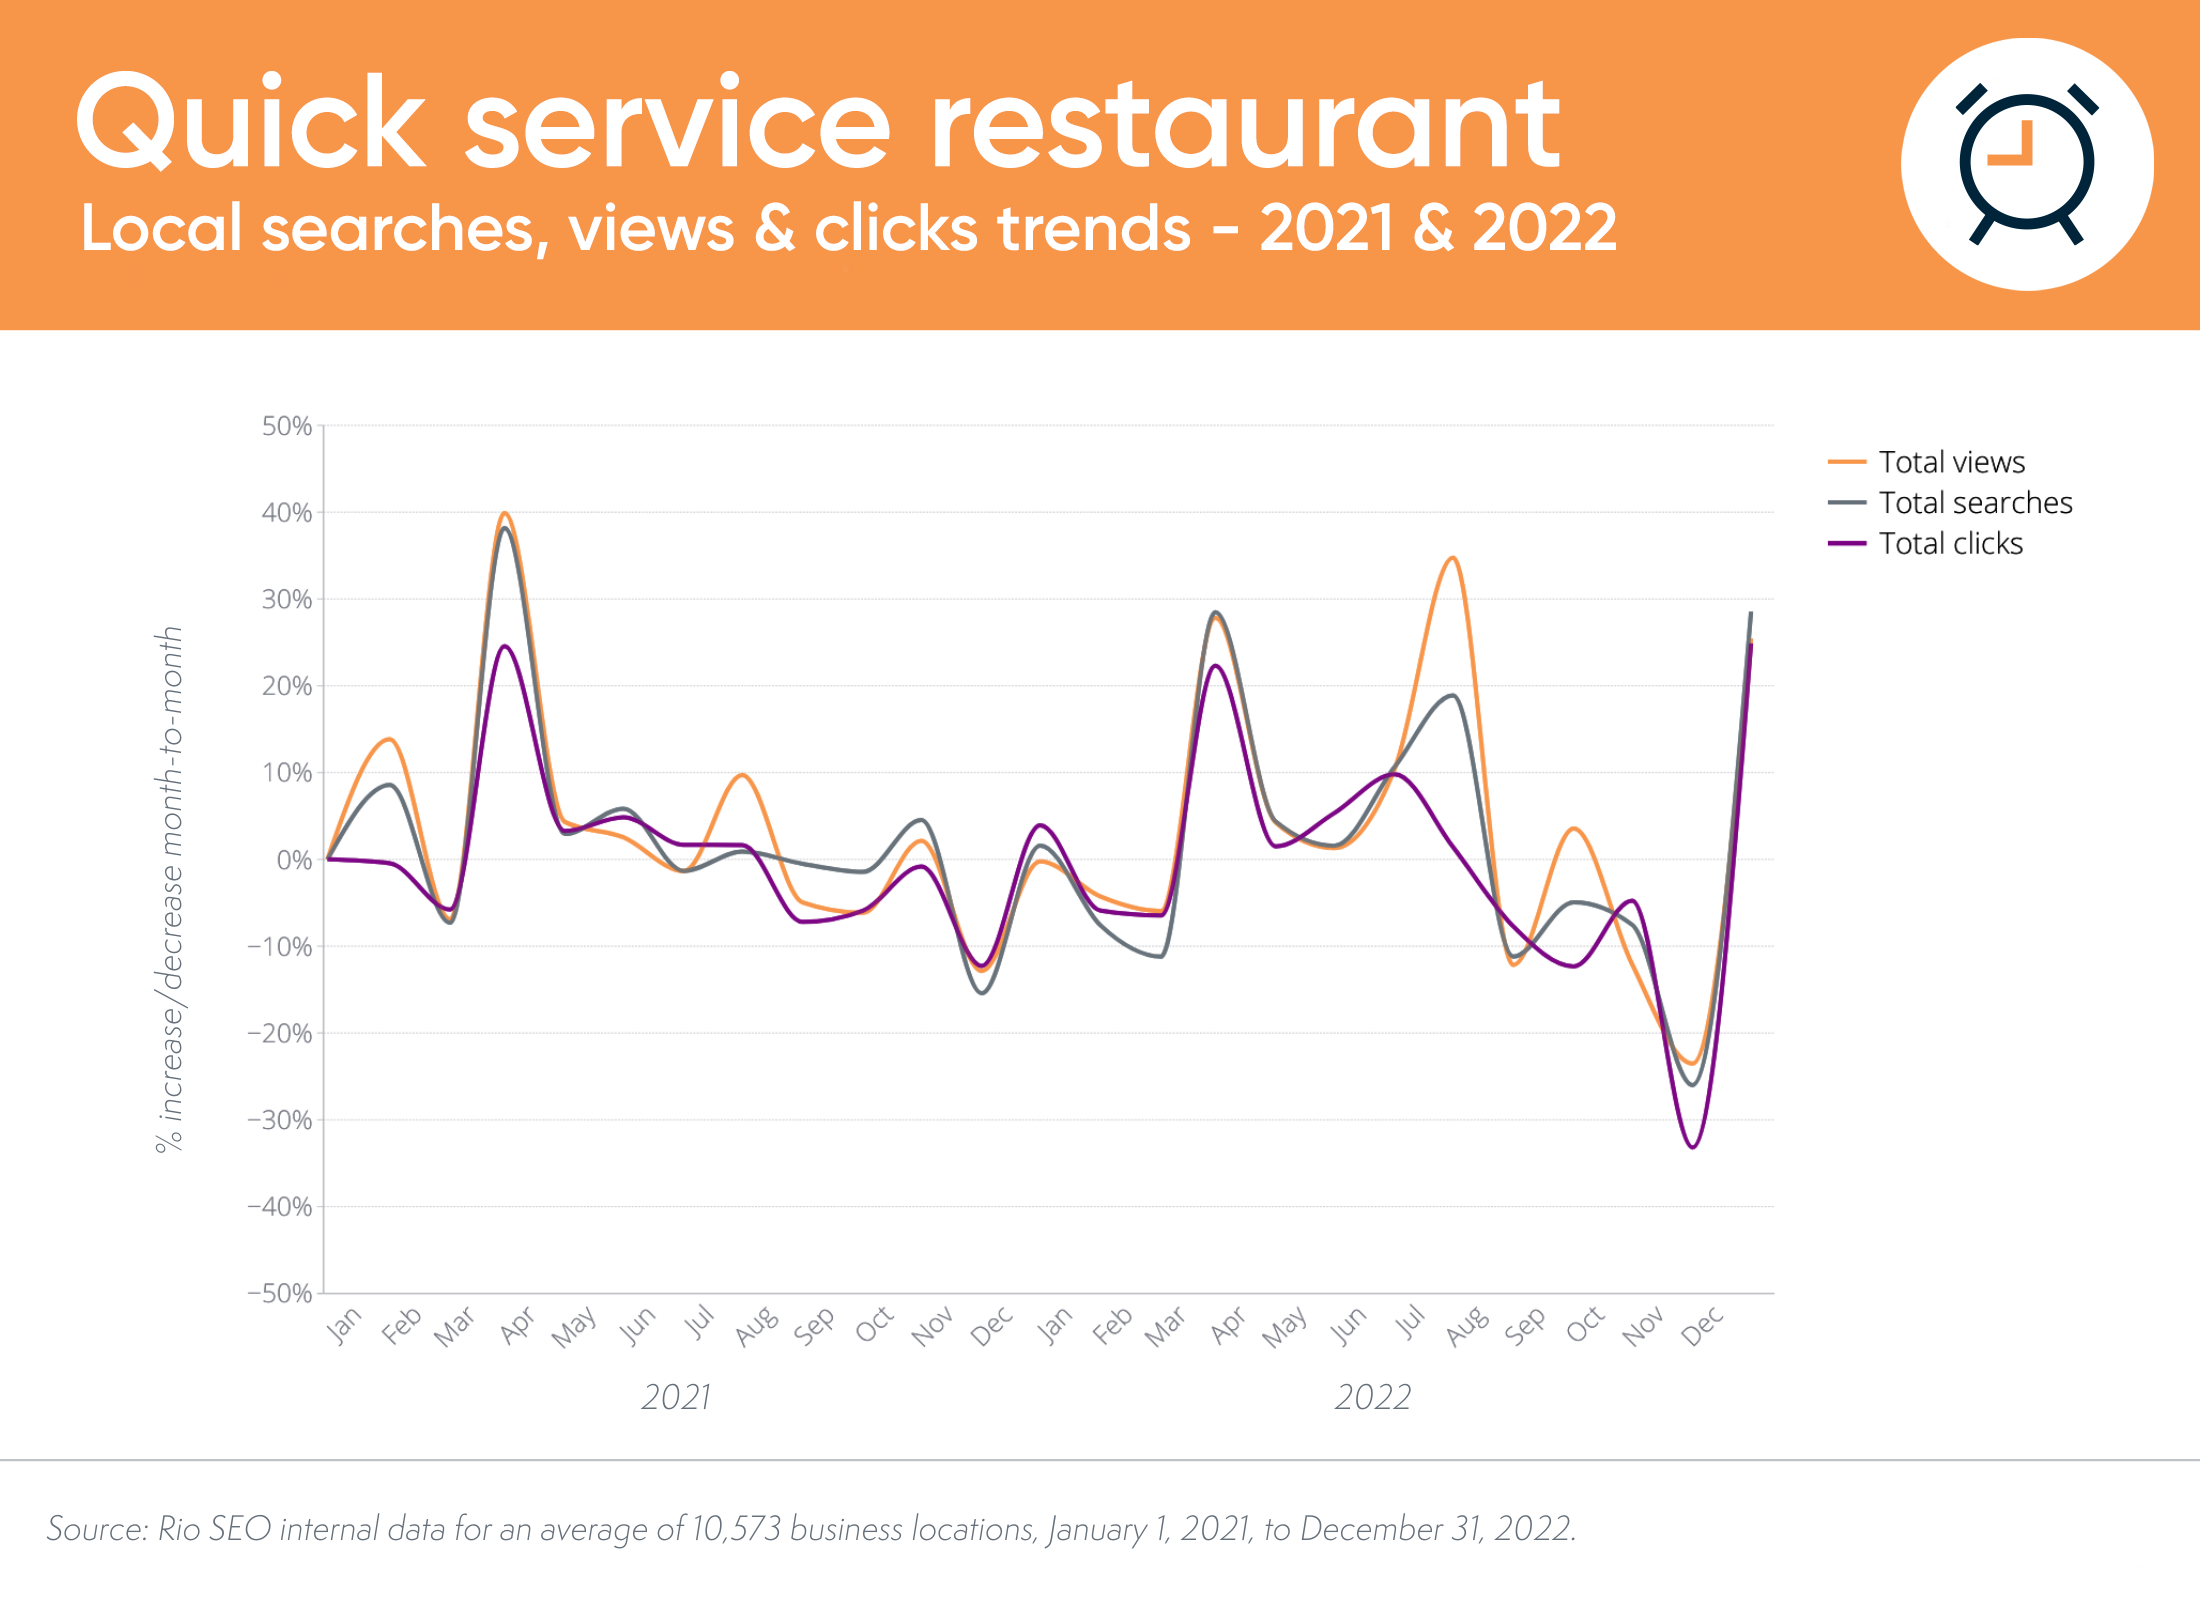 lokalne trendy wyszukiwania i konwersji w restauracjach szybkiej obsługi